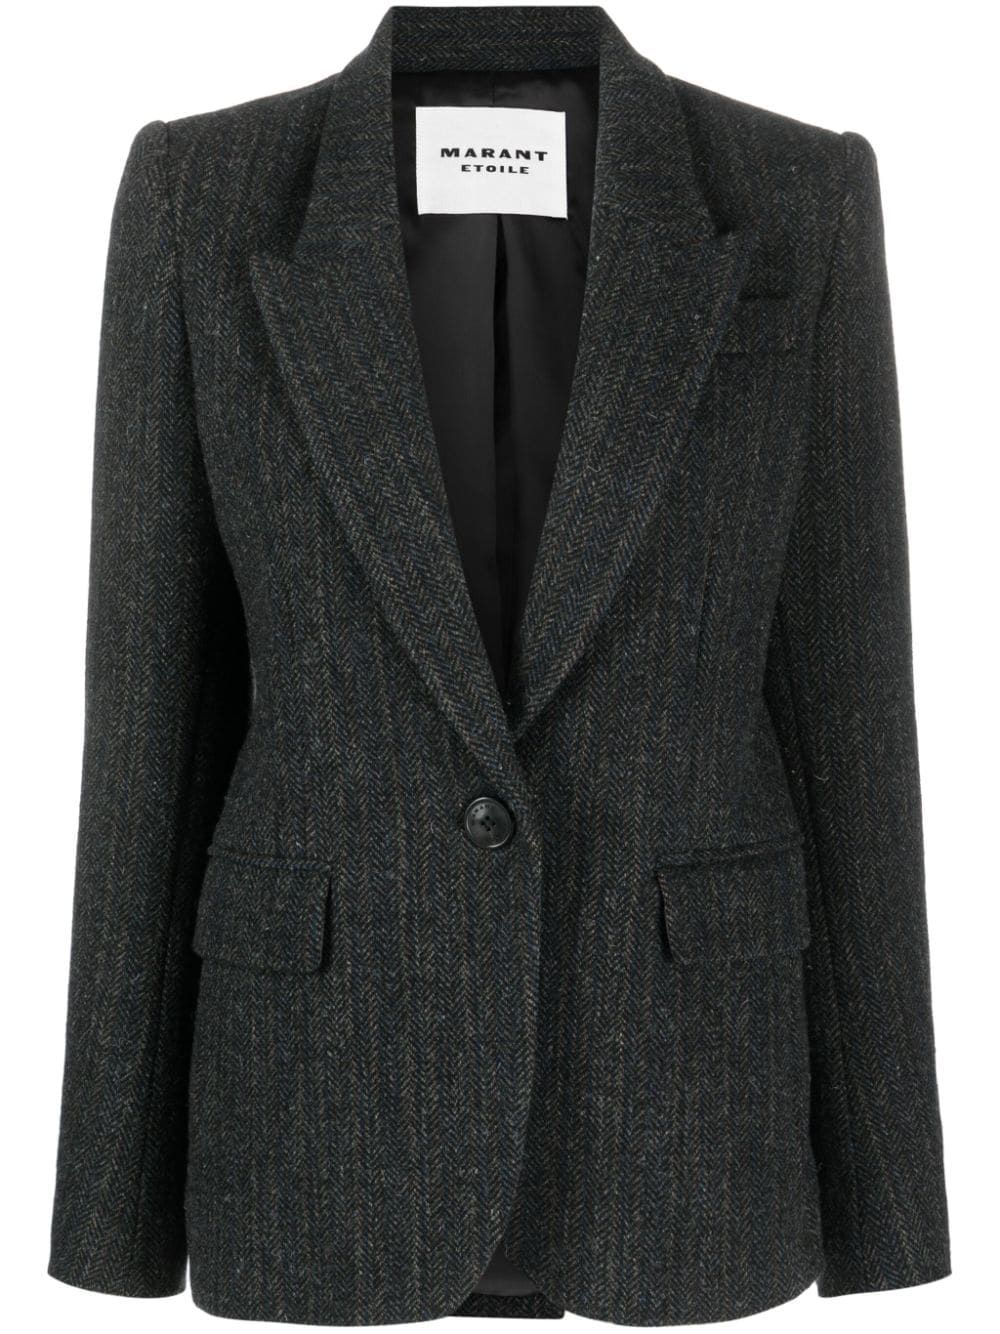 Áo khoác đen thời trang cho phái nữ - Bộ sưu tập FW23